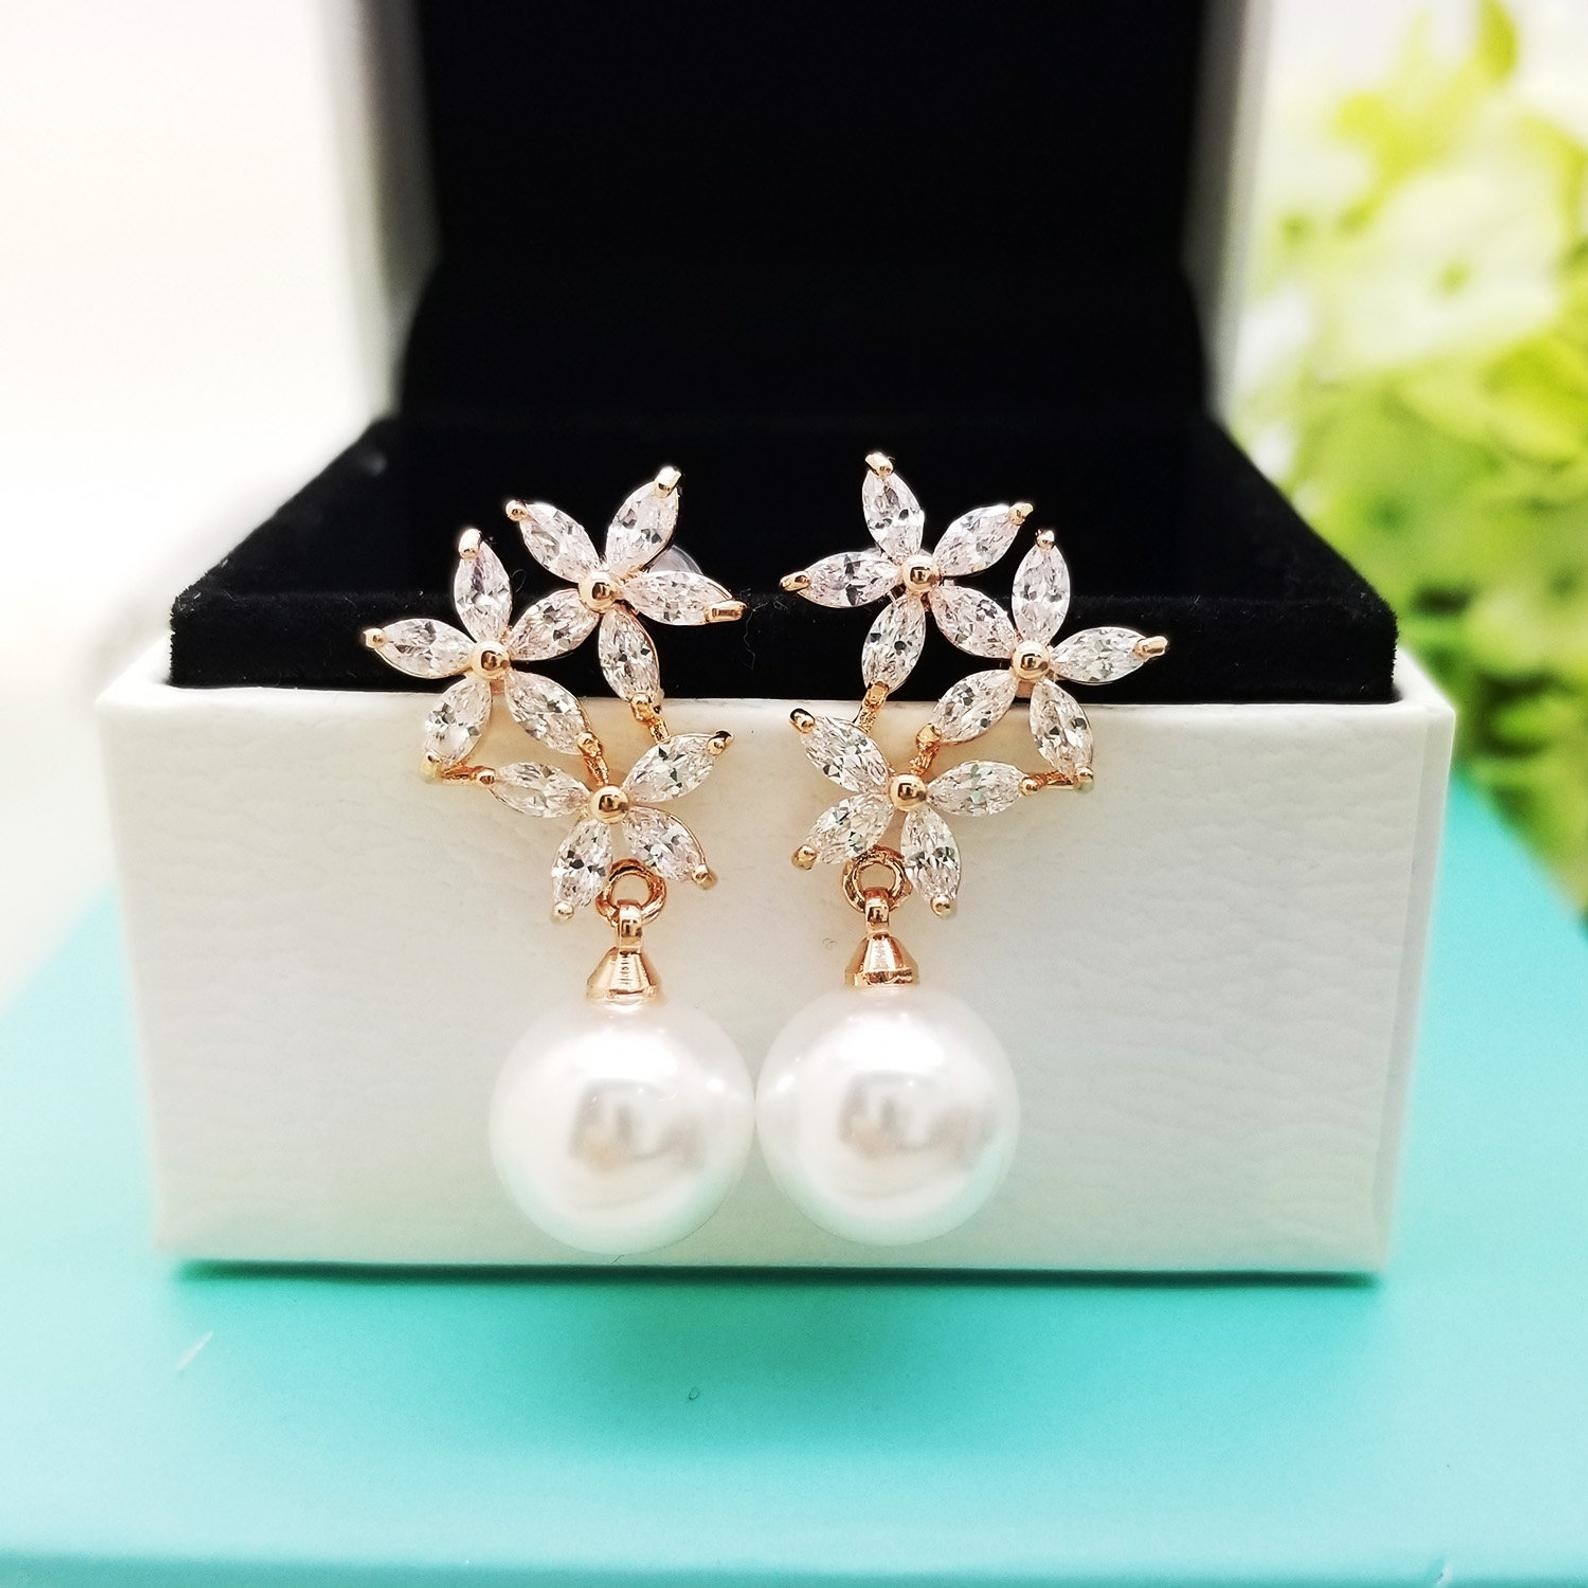 A set of pearl drop earrings